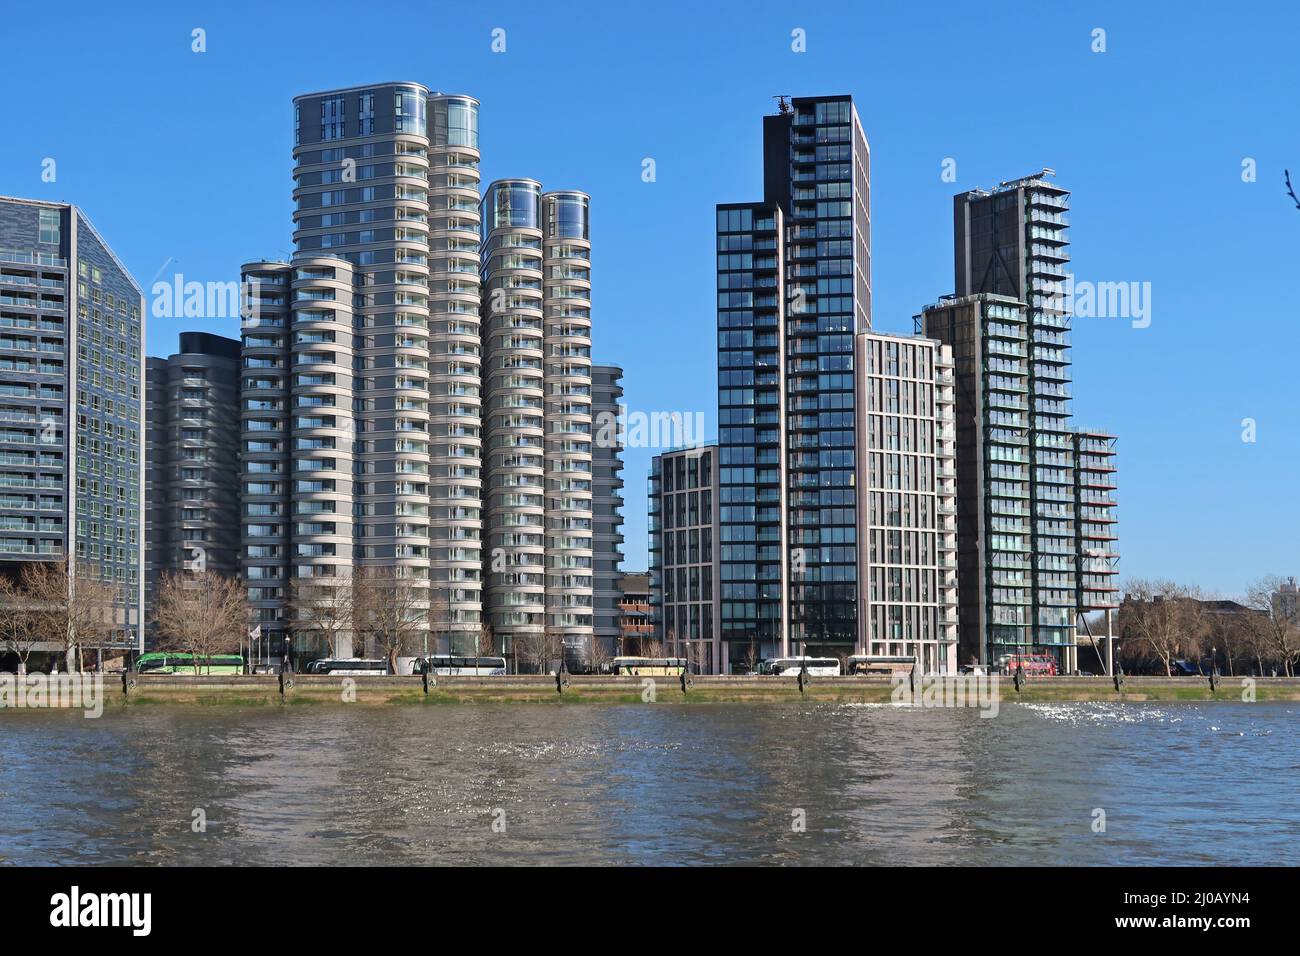 Nuevos bloques de apartamentos en el Albert Embankment de Londres. Incluye el Corniche de Foster + Partners (izquierda) y Merano Residences de Richard Rogers (derecha). Foto de stock